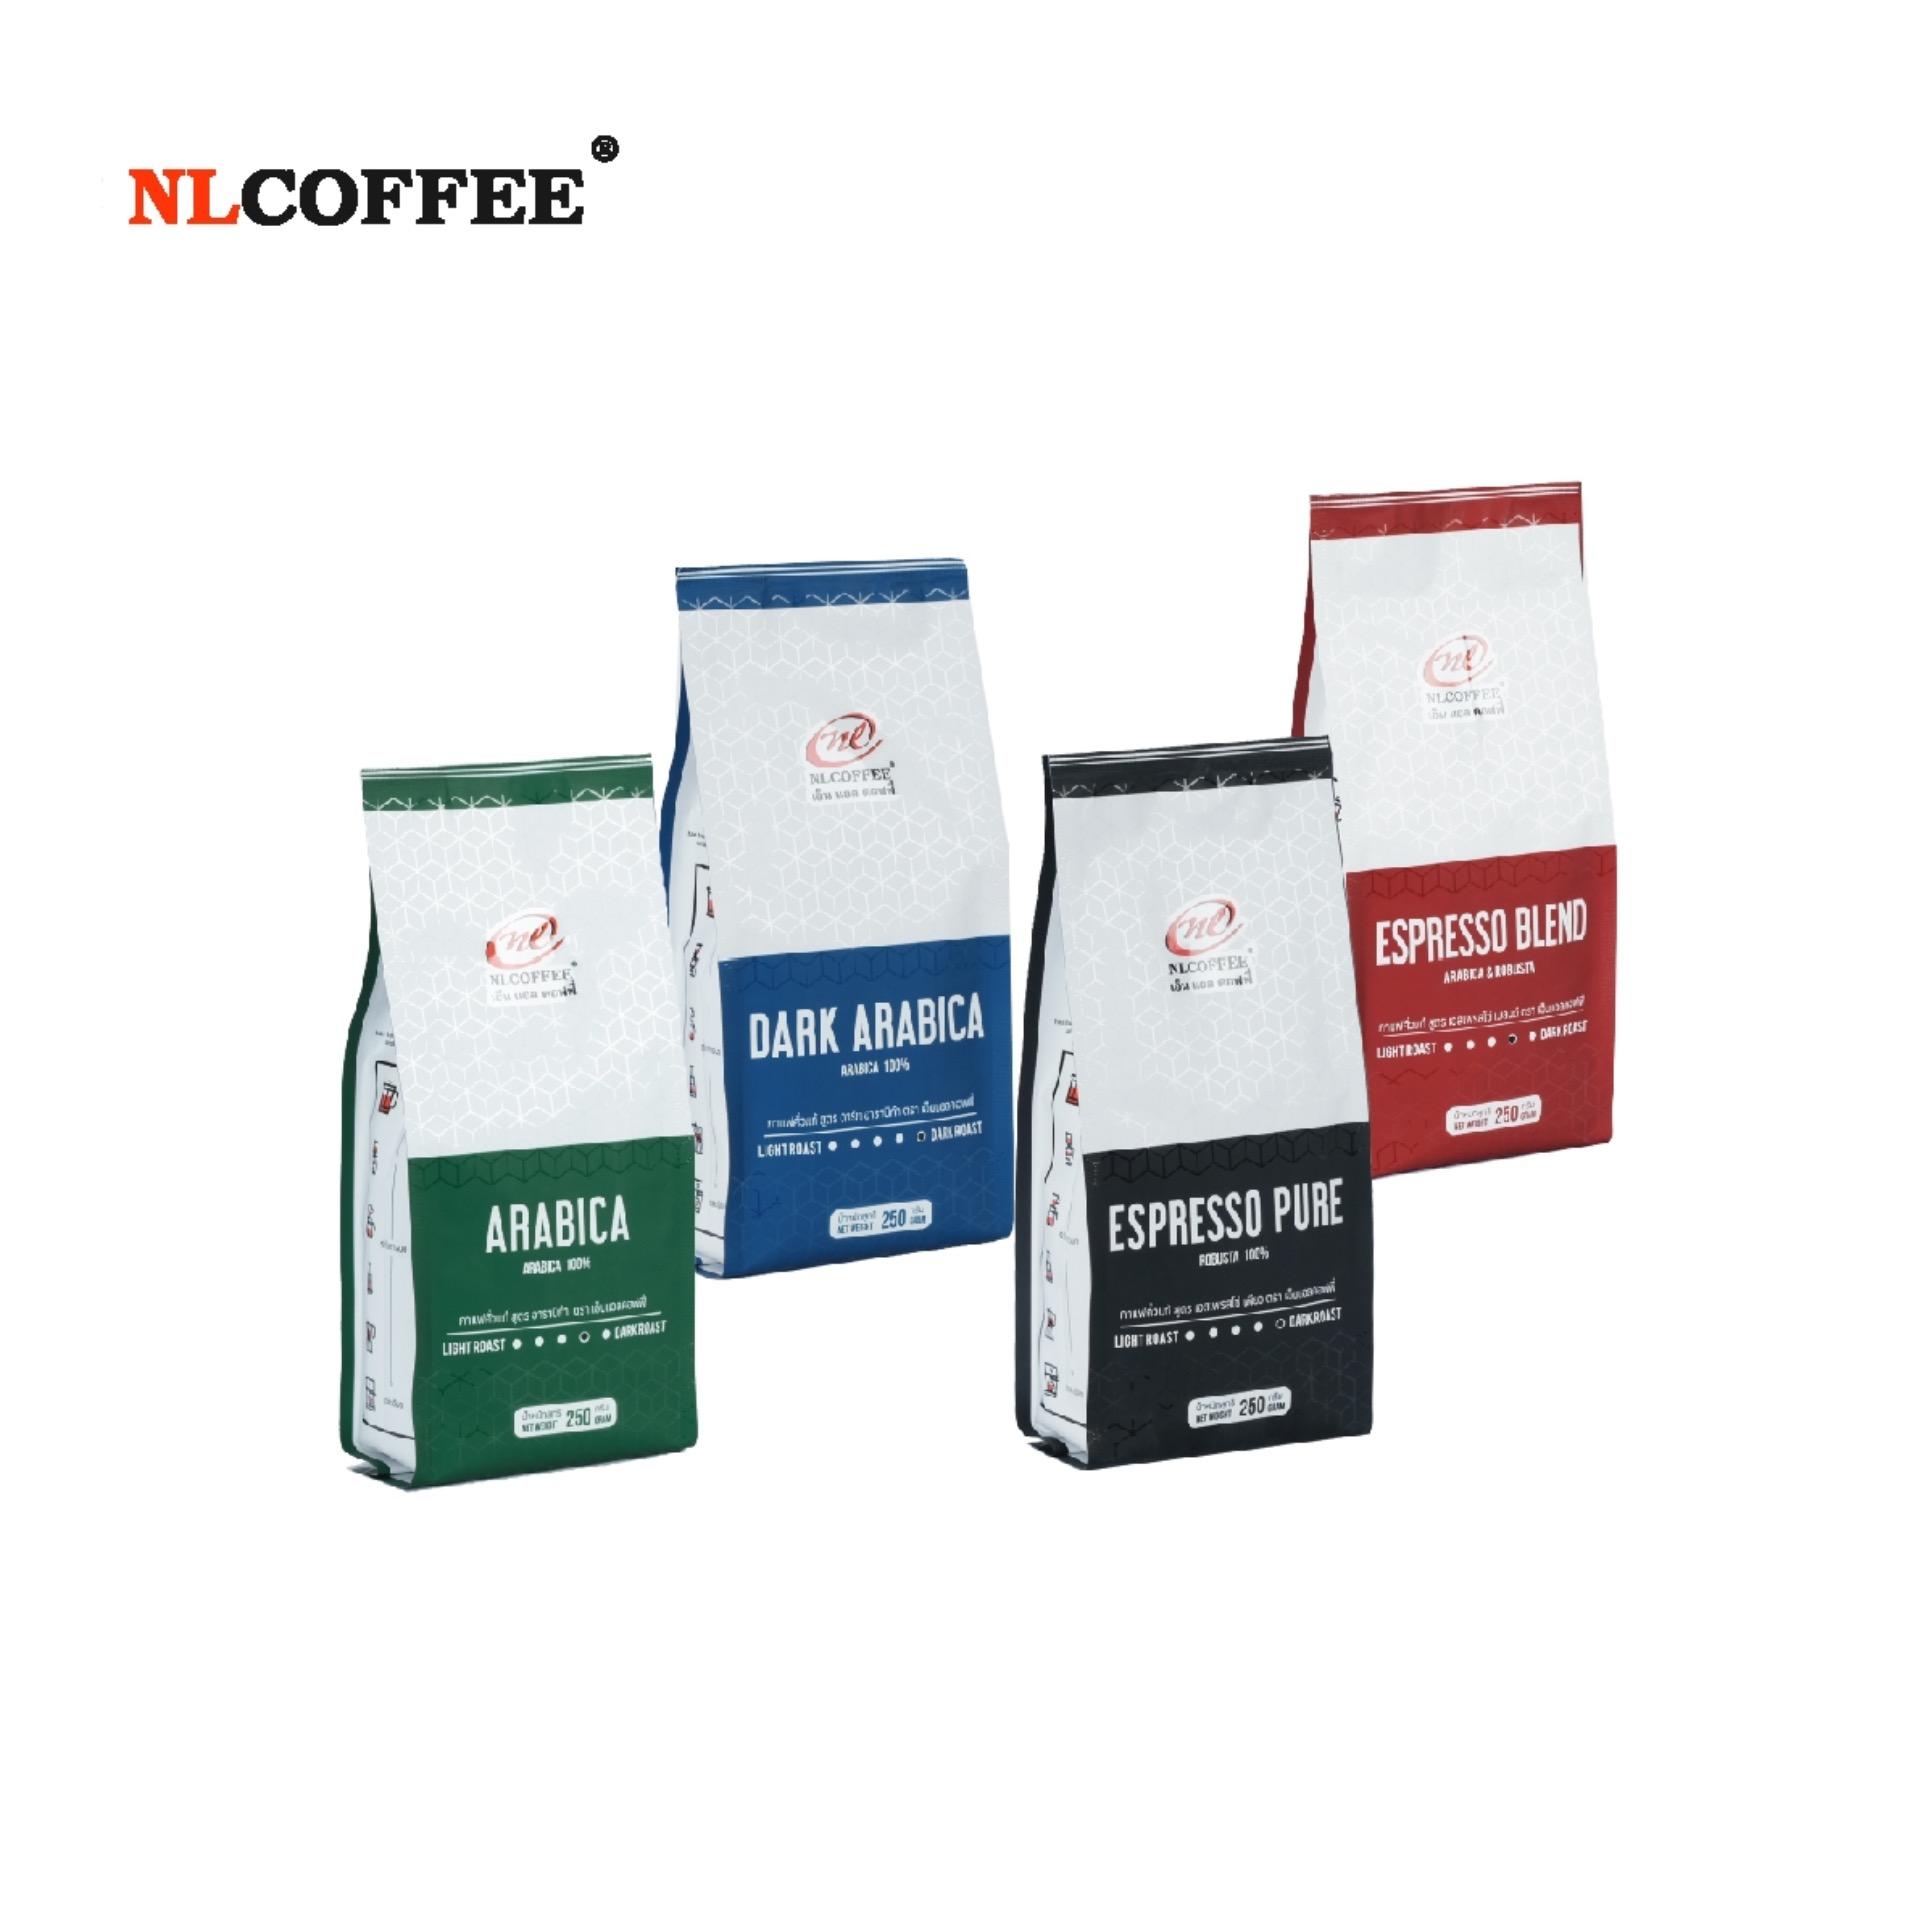 เมล็ดกาแฟคั่ว ชุดพิเศษ กาแฟอาราบิก้า และโรบัสต้า by NLCOFFEE (250กรัม 4แพ็ค)